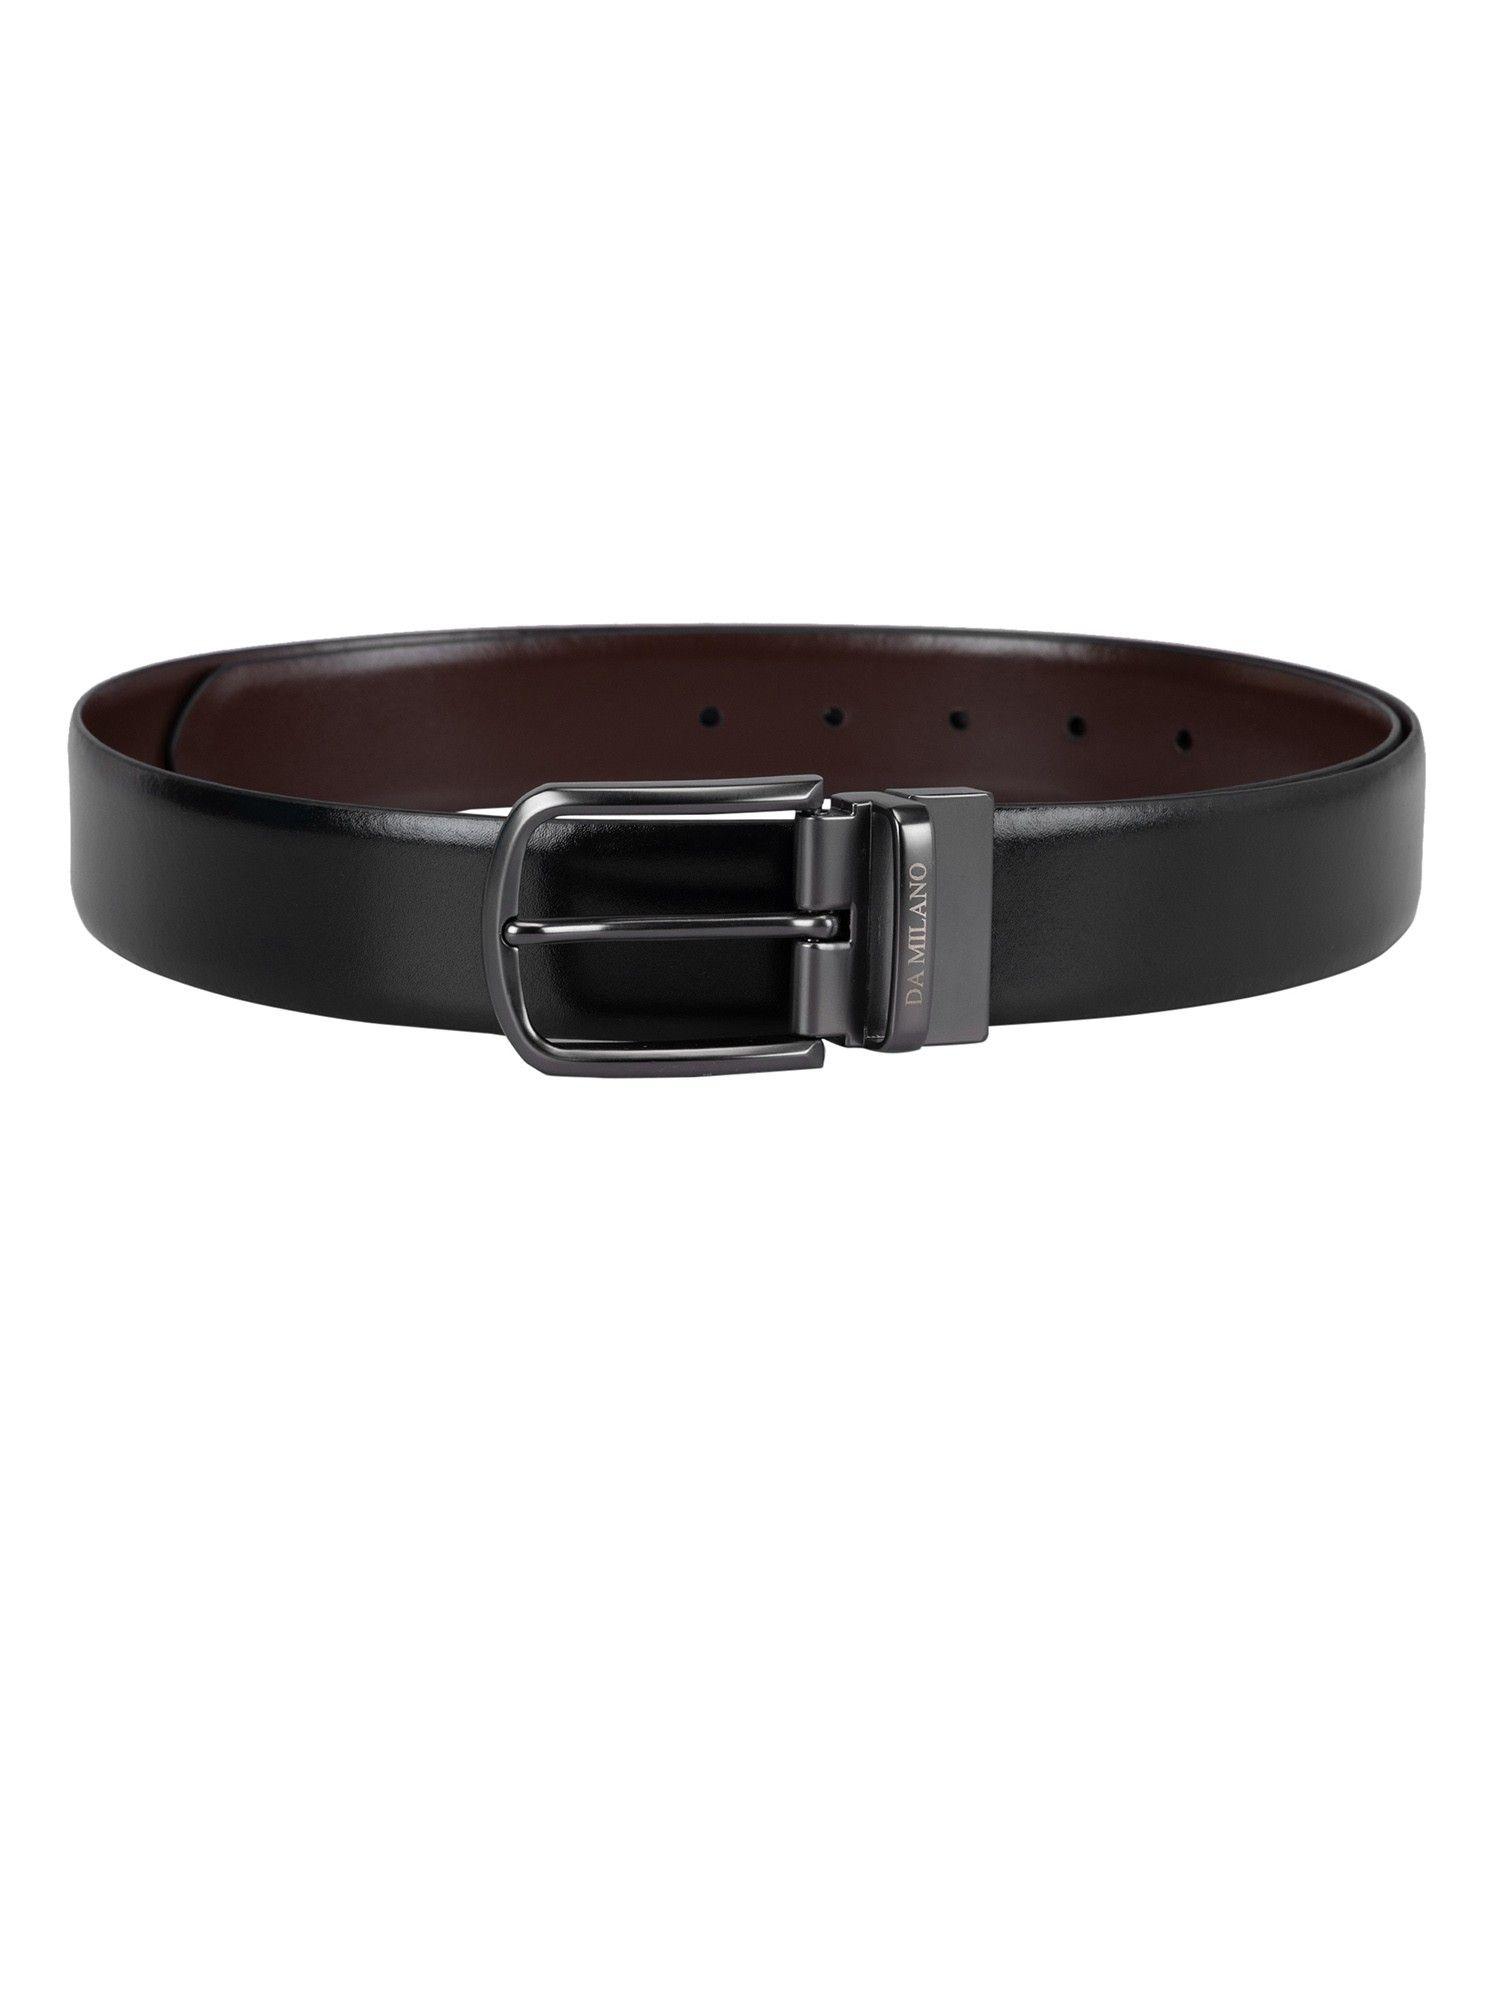 plain leather black & brown reversible belt bm-3193b-35r-olblkbrnpln